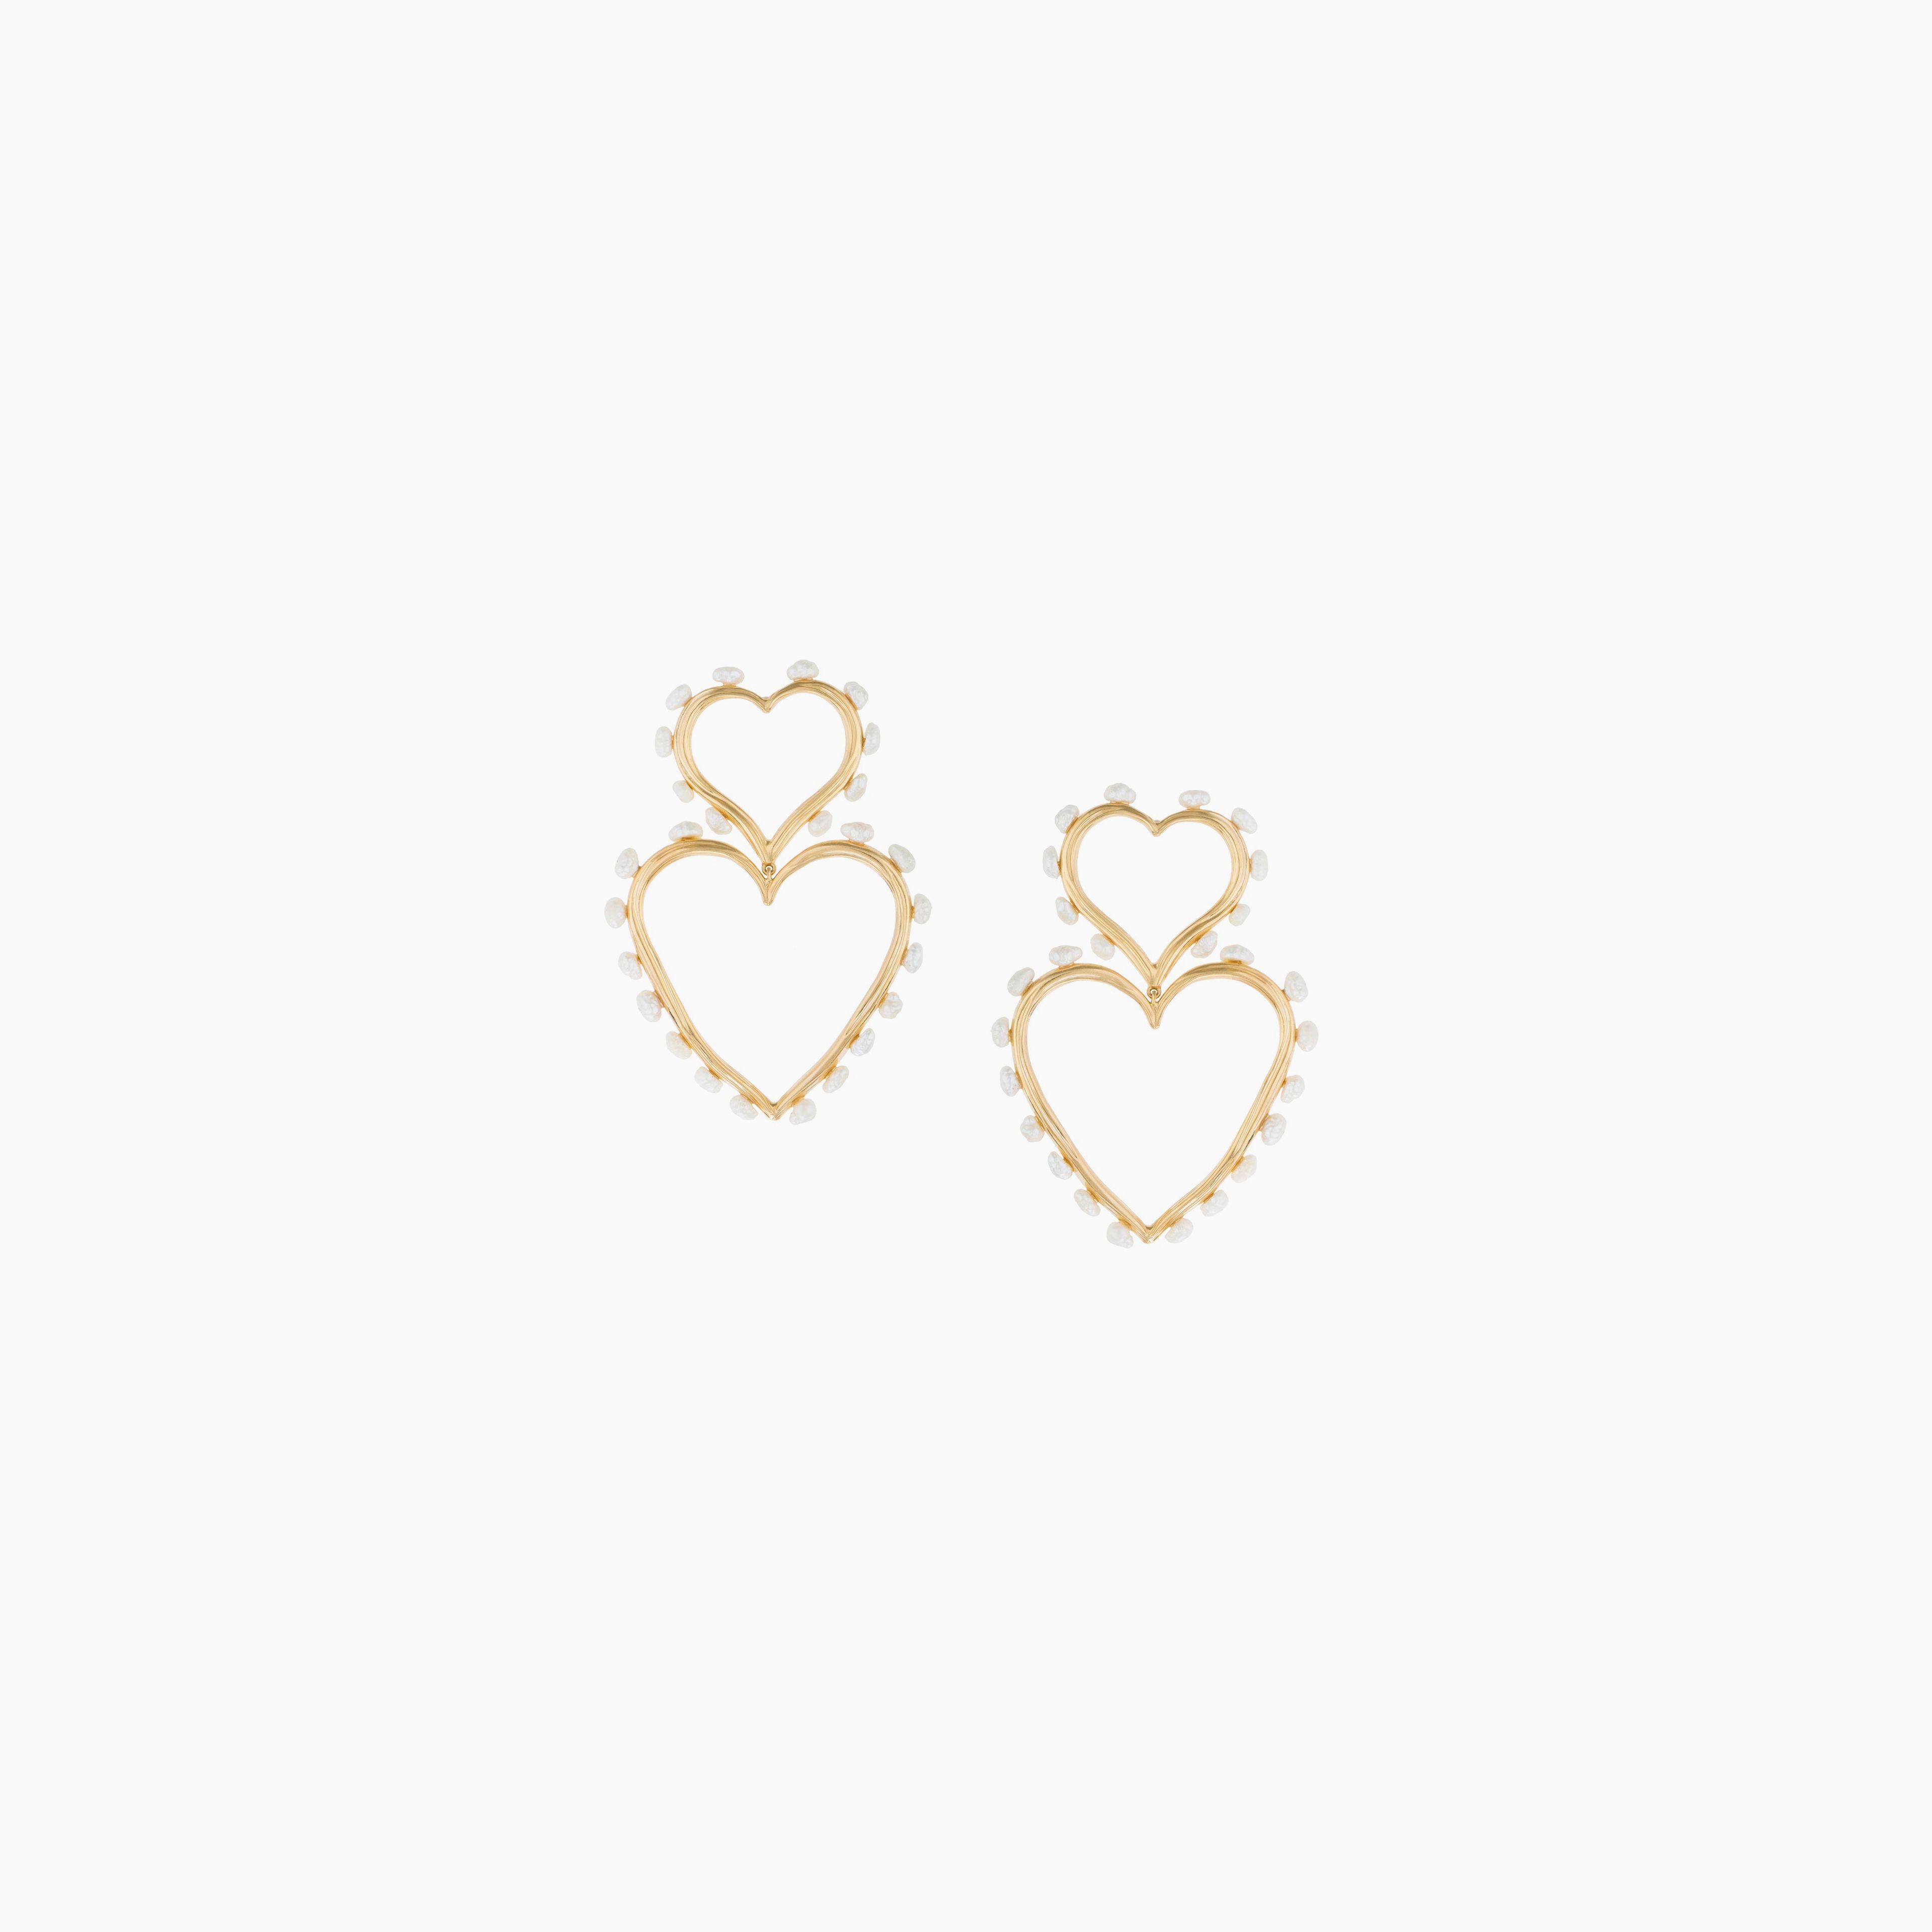 Double Heart Statement Pearl Earrings